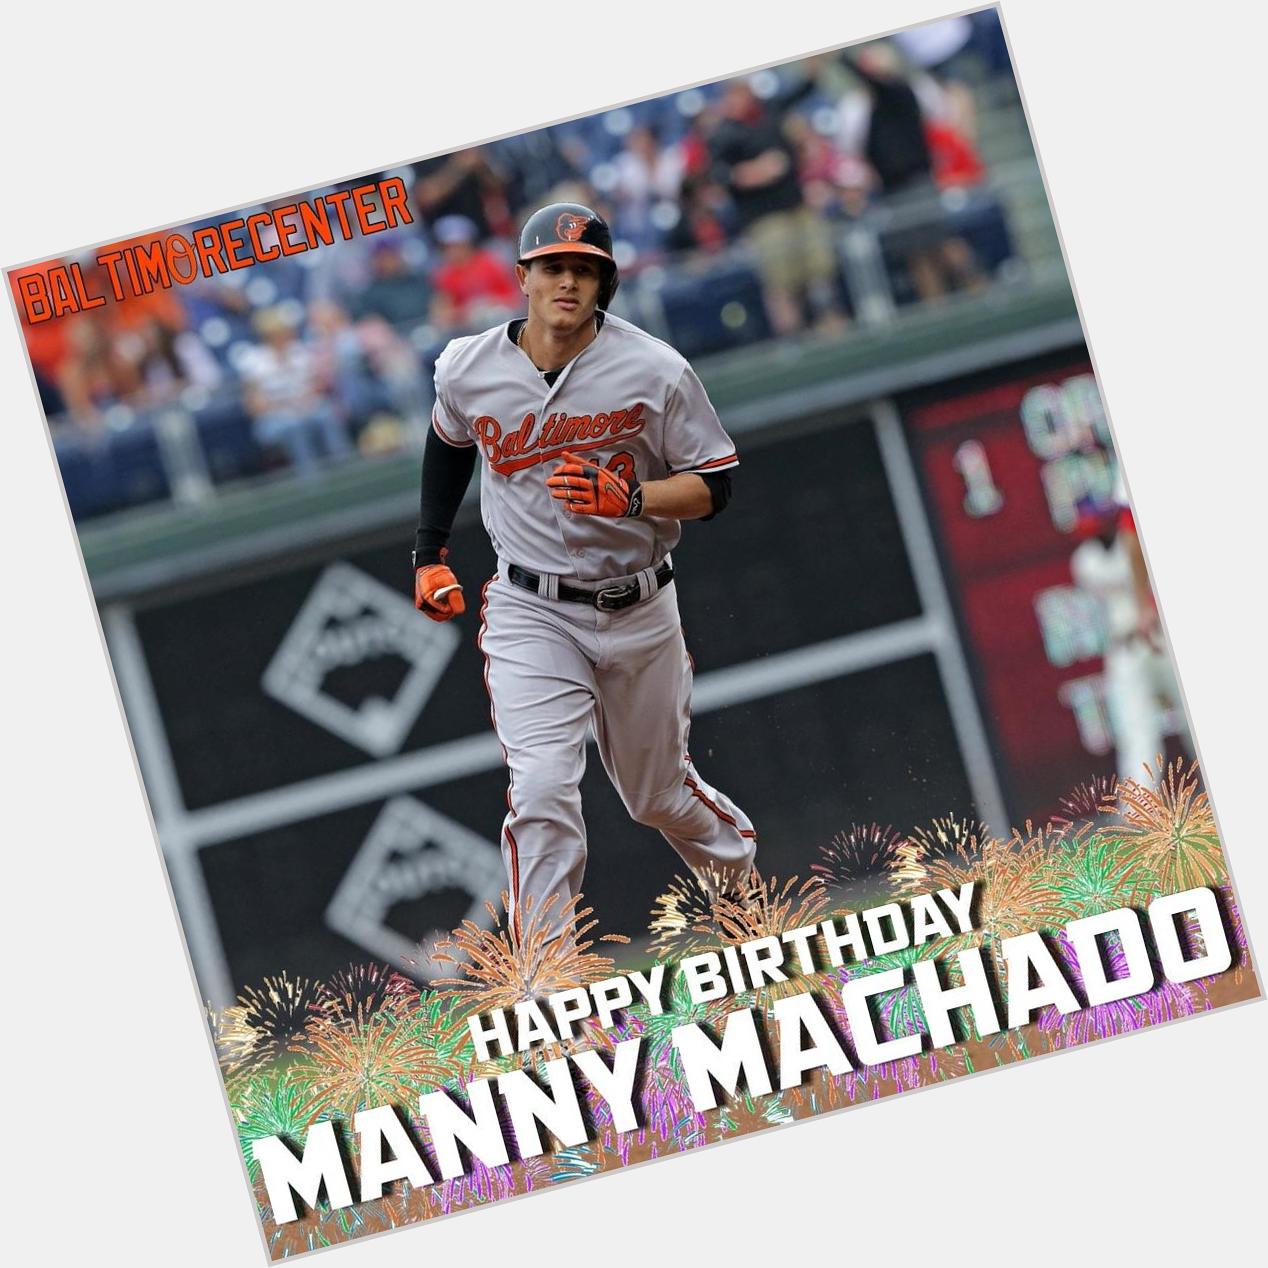 HAPPY BIRTHDAY MANNY MACHADO! 